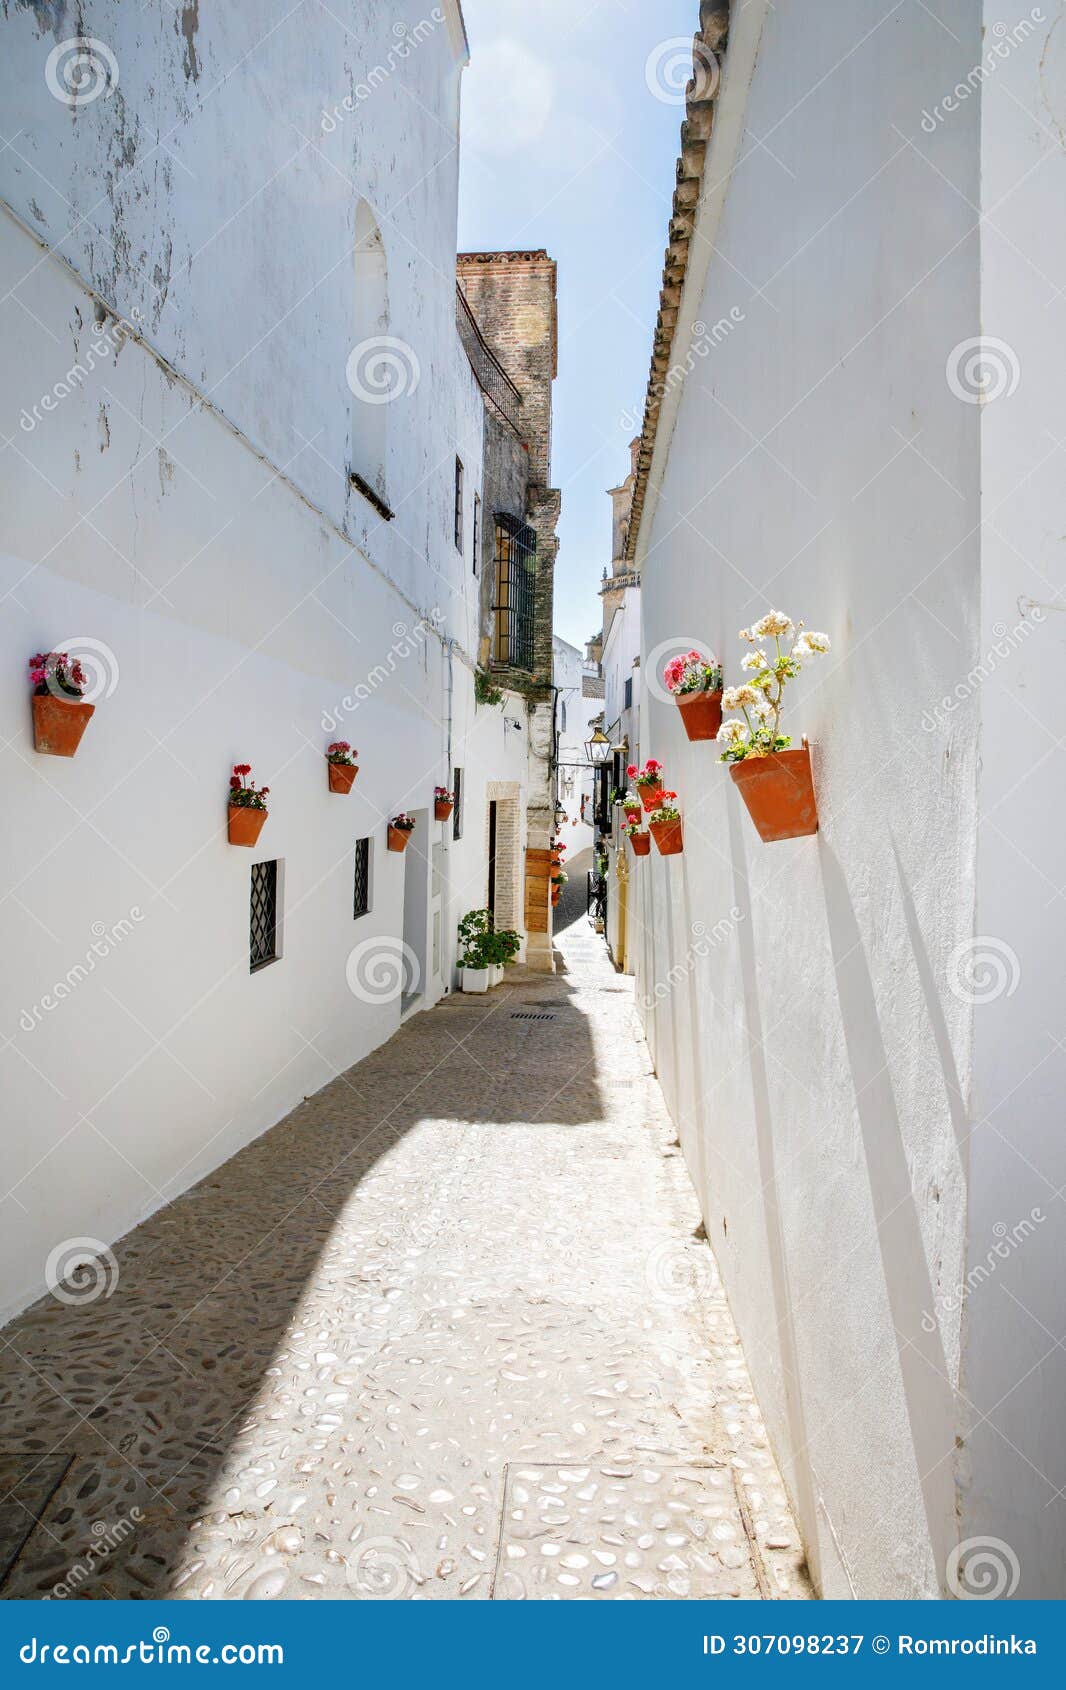 streets of arcos de la frontera, pueblos blancos region, andalusia, spain, europe